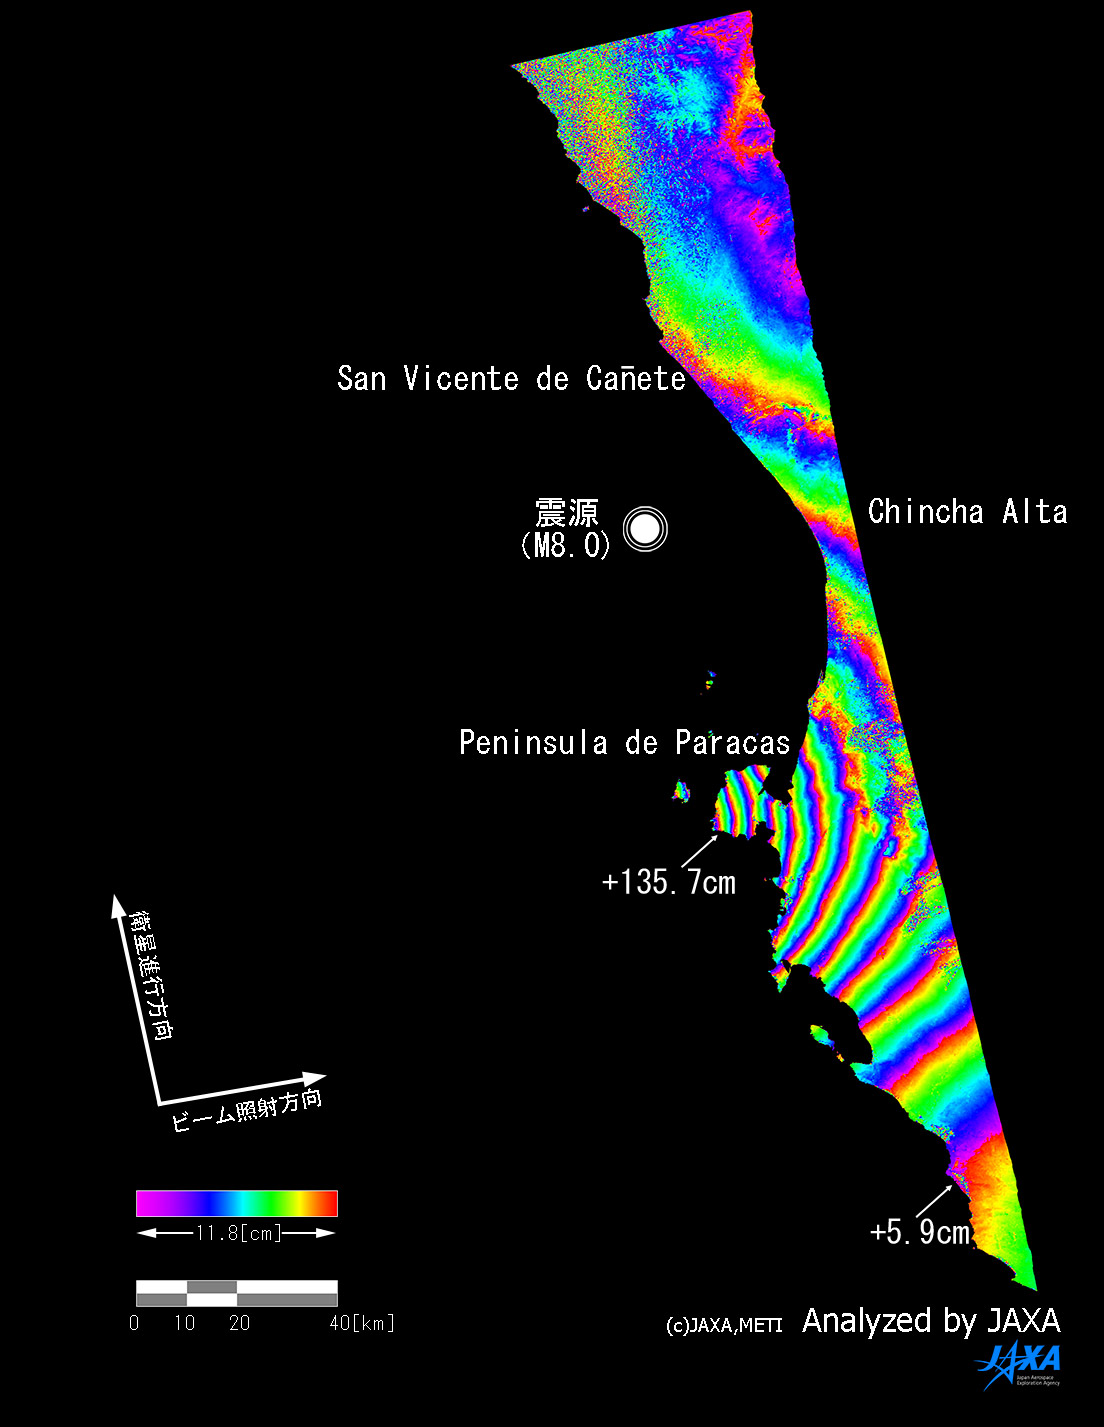 Diastrophism around the epicenter of Peru Earthquake